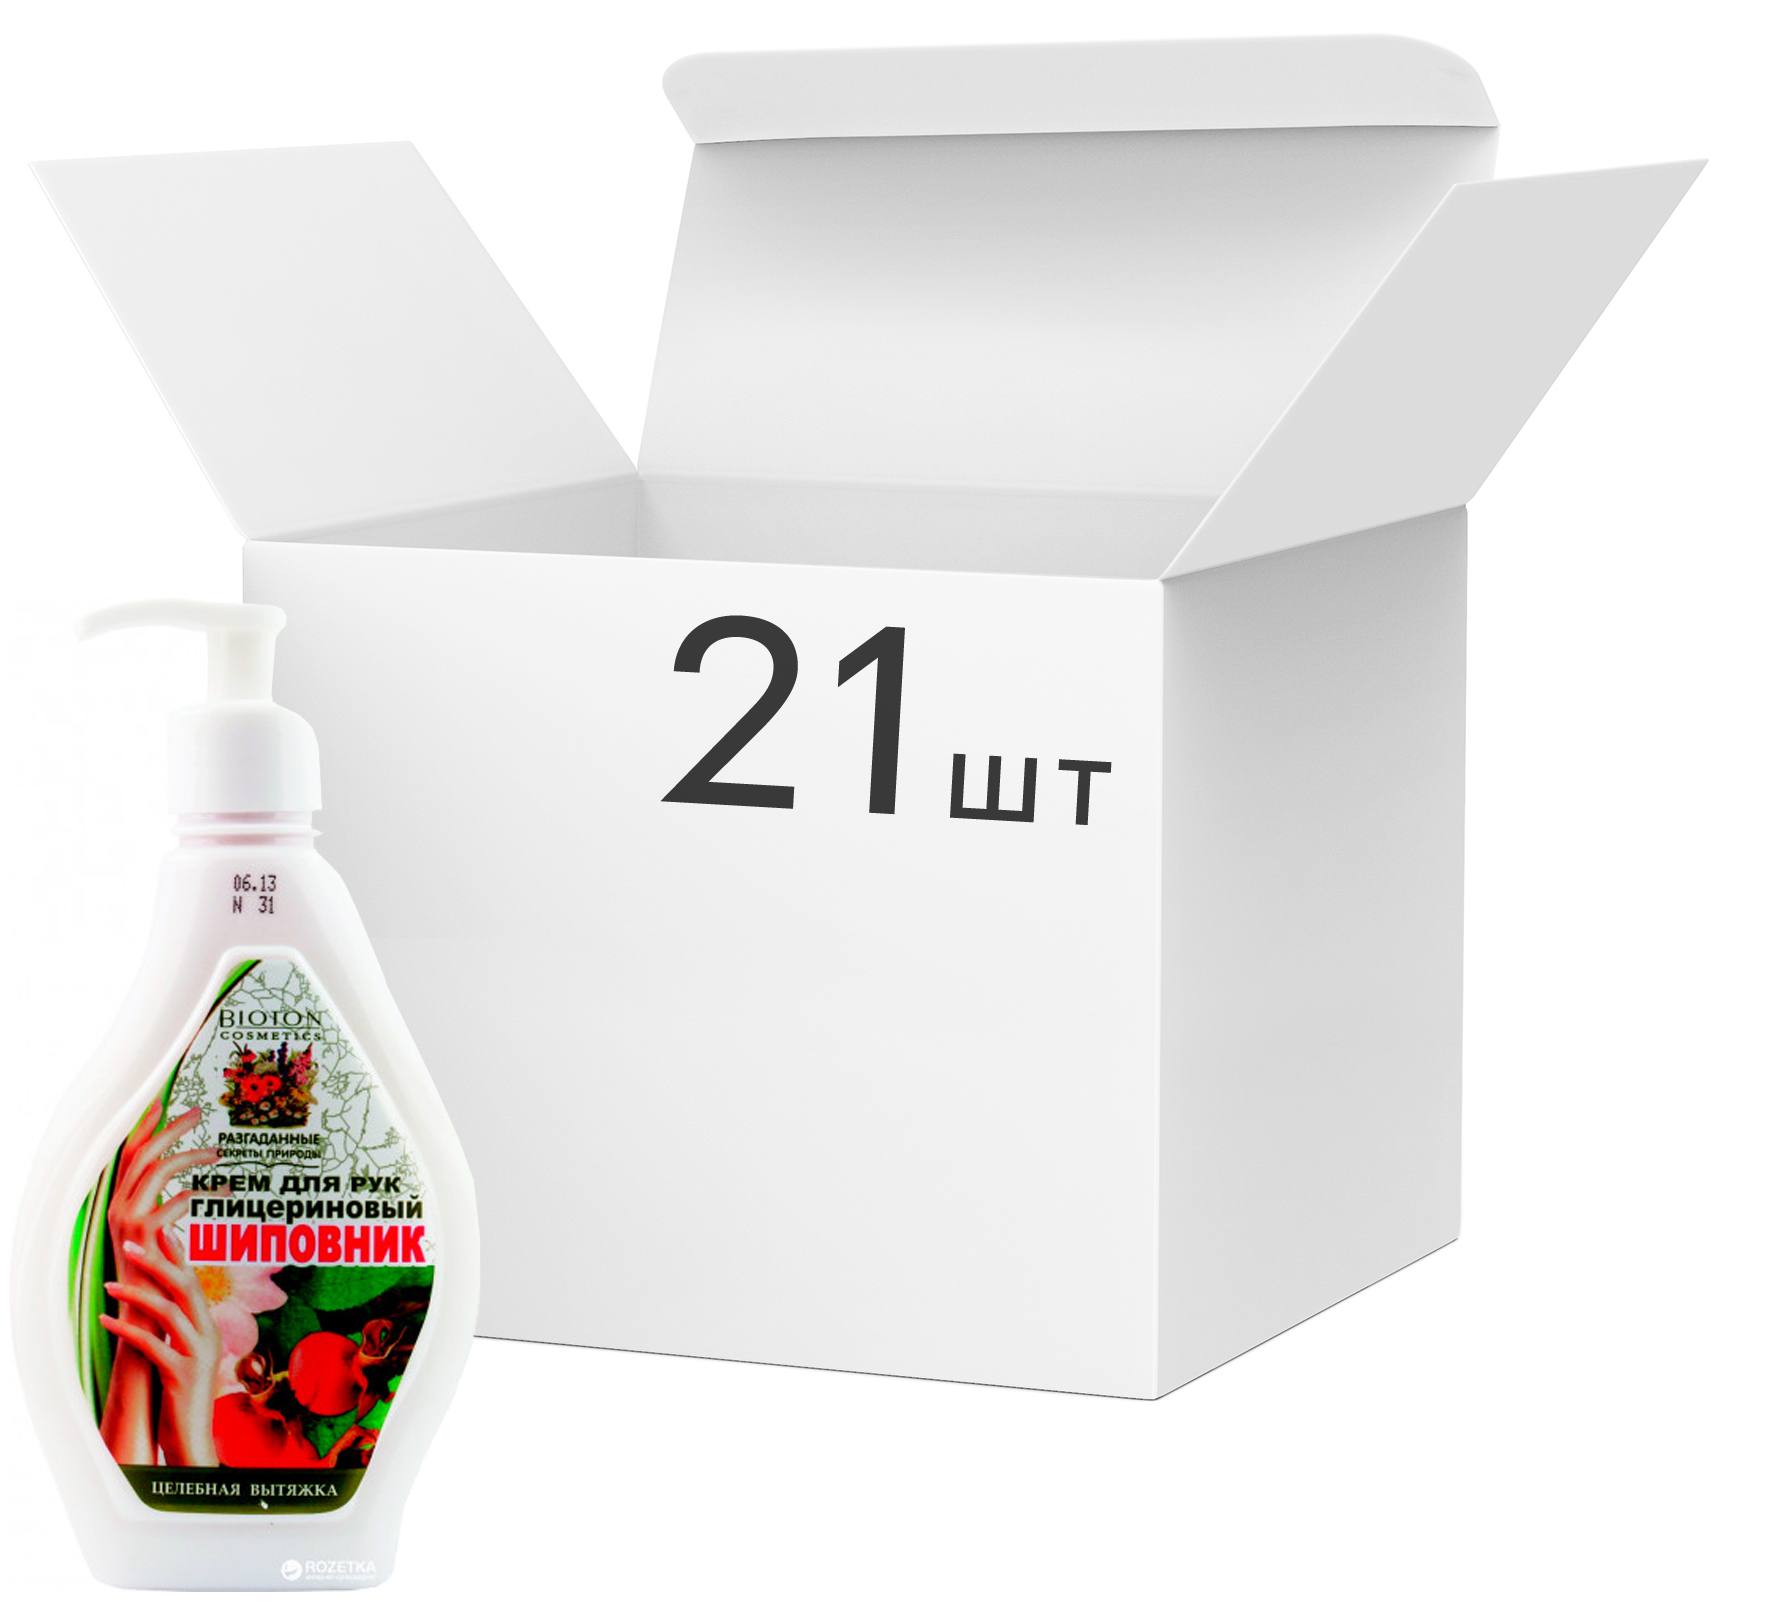 Акция на Упаковка крема для рук Bioton Cosmetics Глицериновый Шиповник 350 мл х 21 шт (4820026153063) от Rozetka UA